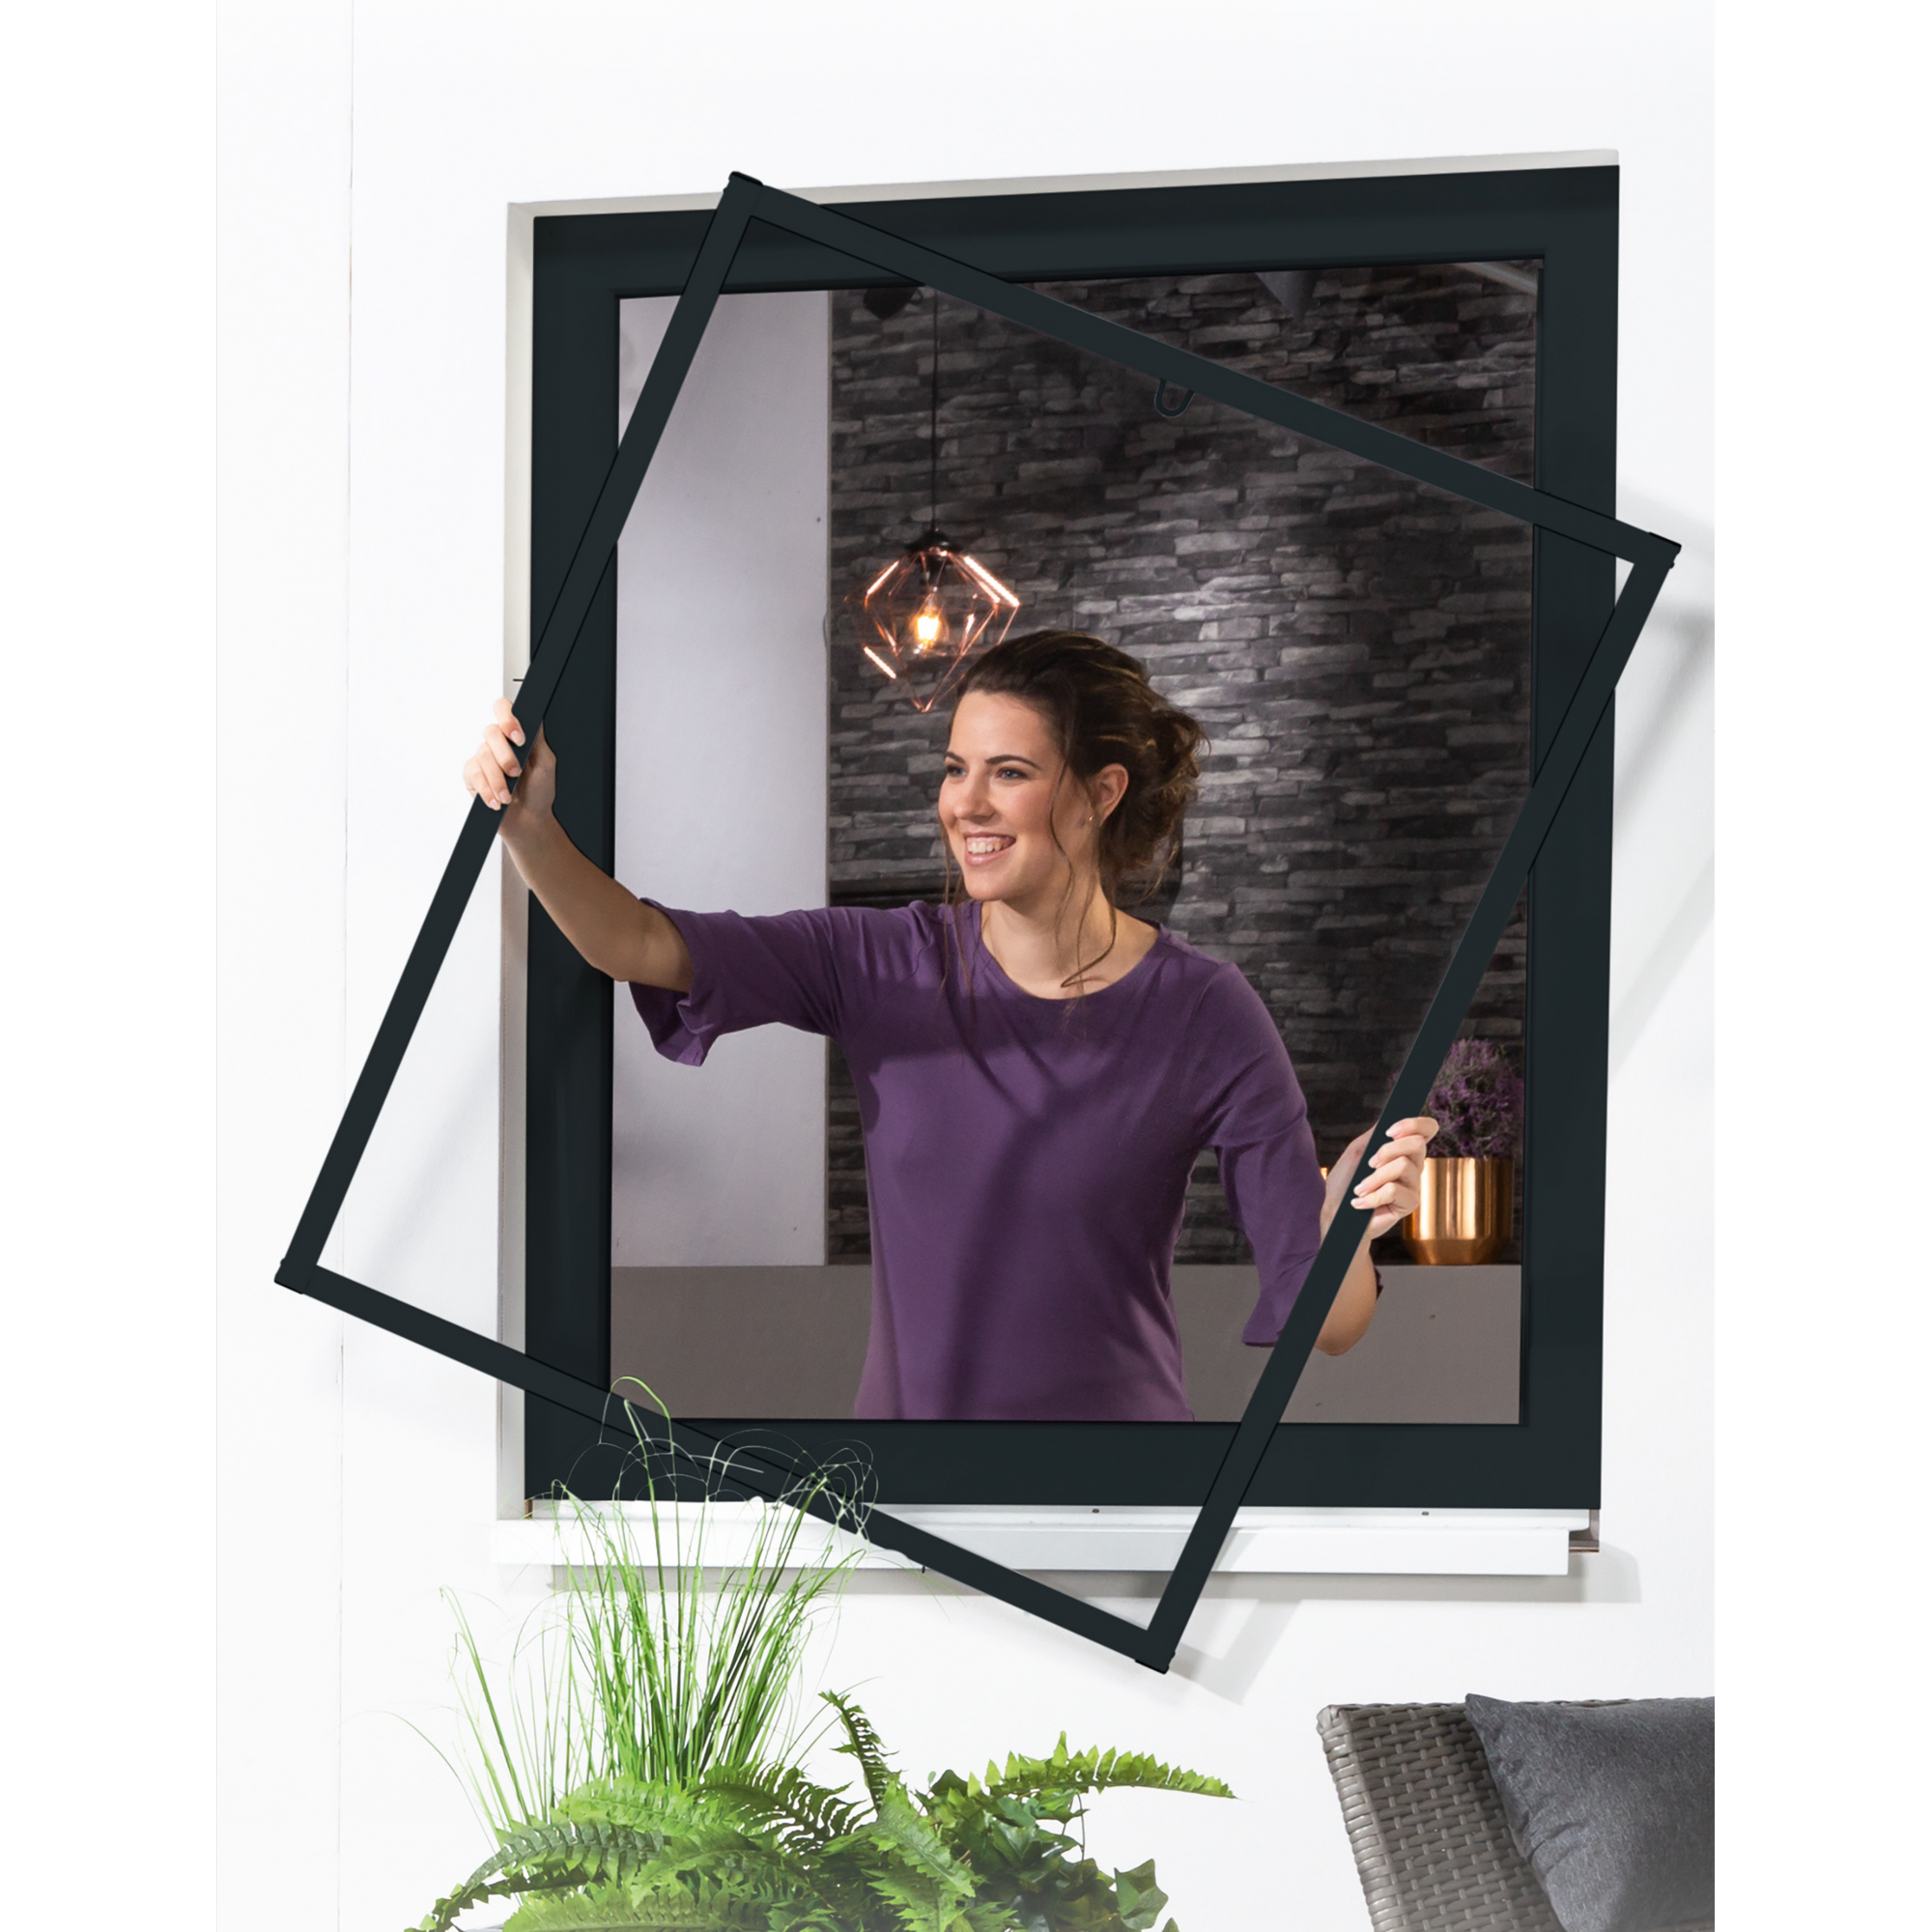 Bausatz für Fenster 'Master Slim' 130 x 150 cm anthrazit + product picture